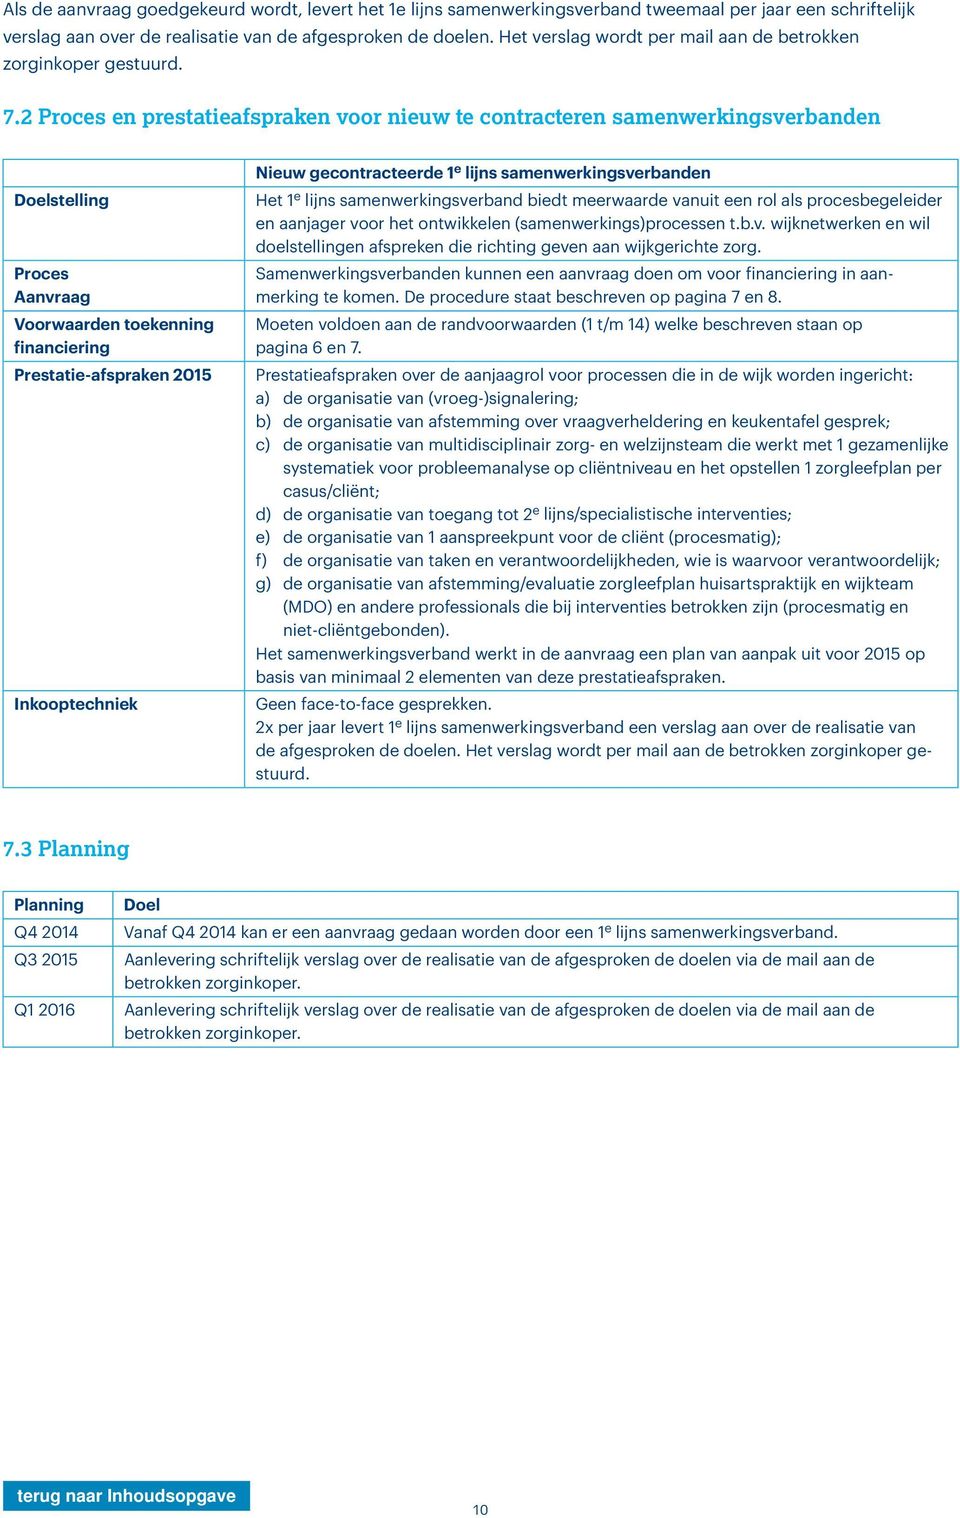 2 Proces en prestatieafspraken voor nieuw te contracteren samenwerkingsverbanden Doelstelling Proces Aanvraag Voorwaarden toekenning financiering Prestatie-afspraken 2015 Inkooptechniek Nieuw